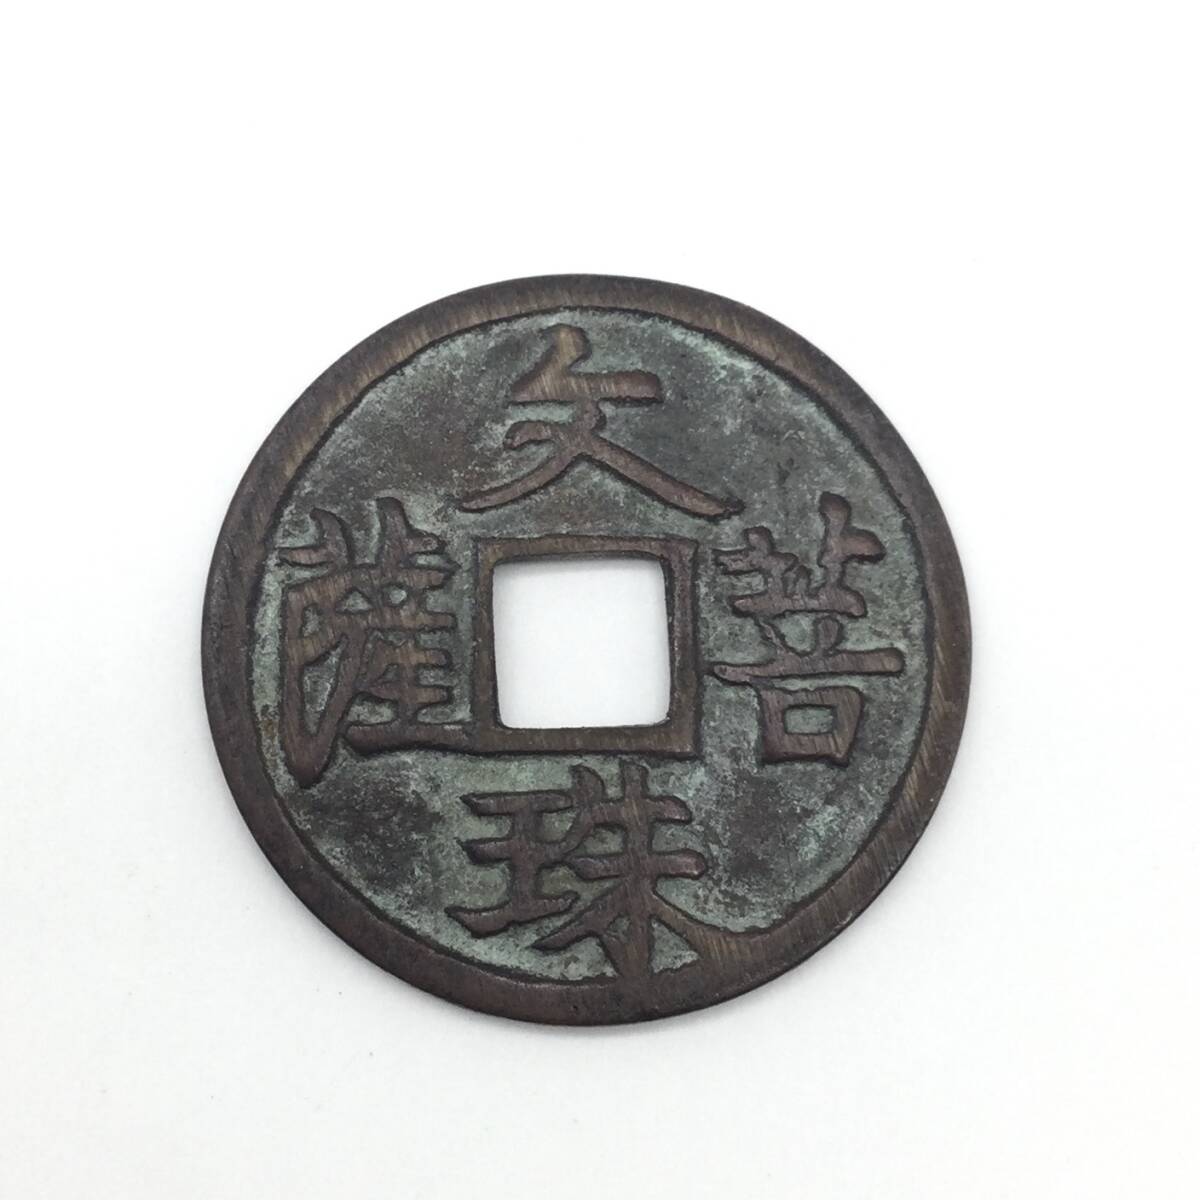 【5331】日本 古銭 絵銭 八体仏 文珠菩薩 厄除け 直径約27㎜ 重量約5.3ｇ 穴銭 貨幣 通貨 硬貨 の画像1